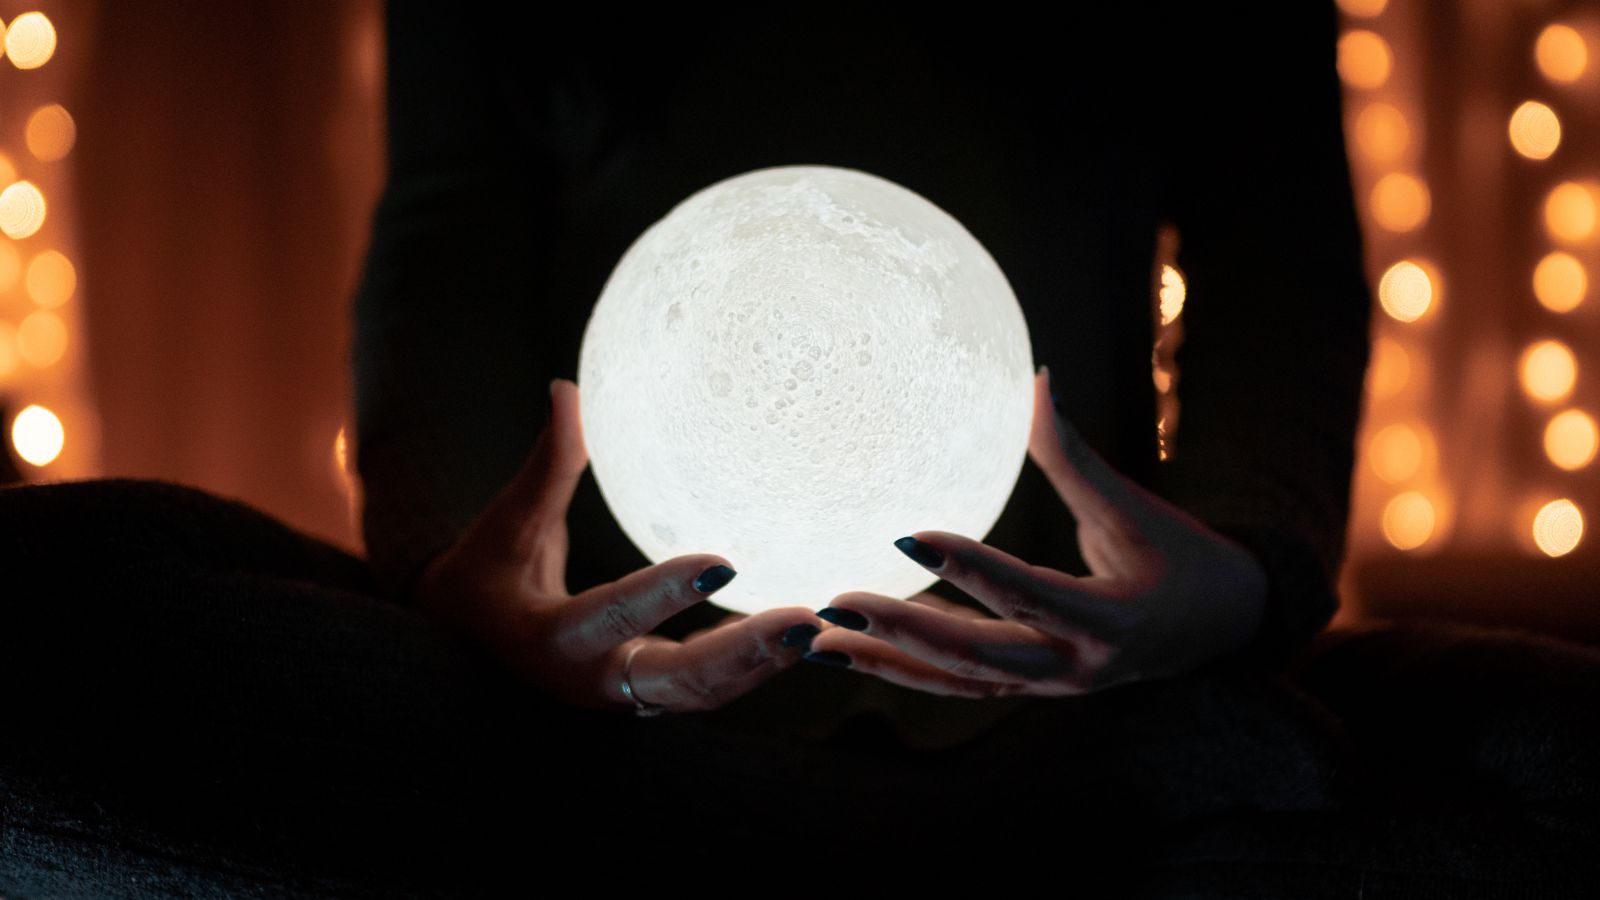 Pessoa segurando uma luminária em formato de lua cheia.